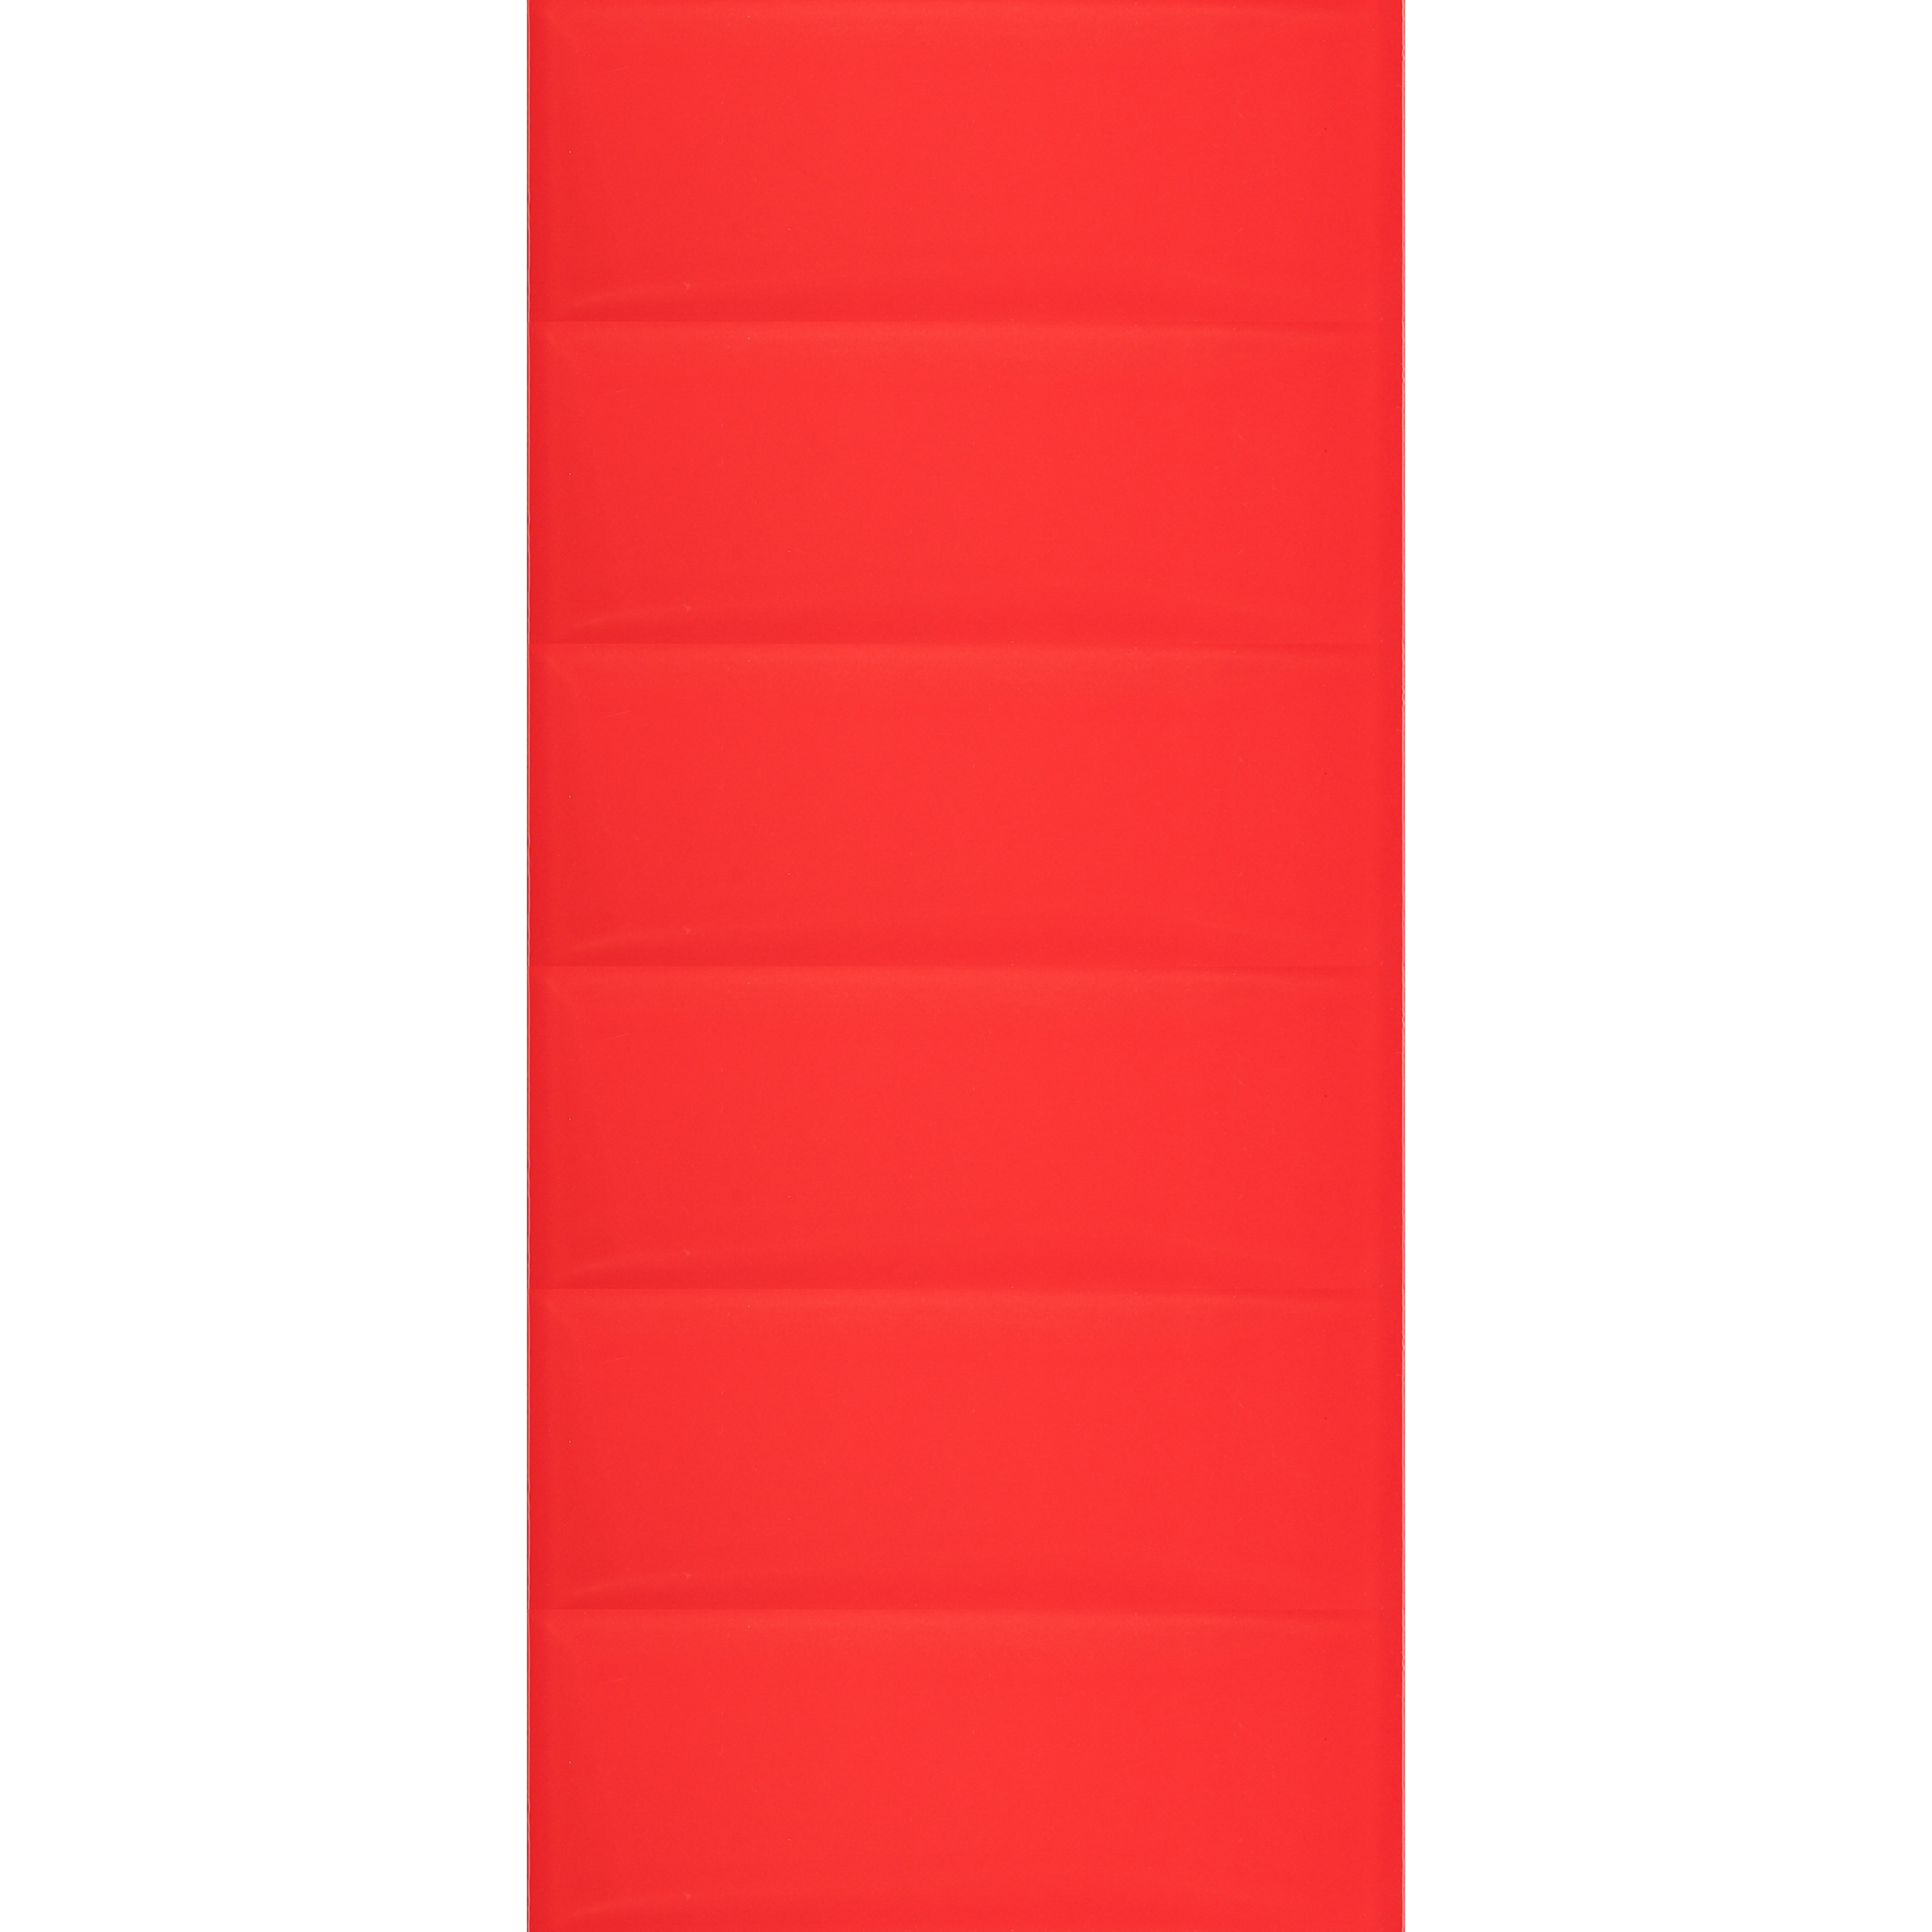 Плитка облицовочная Cersanit Evolution рельеф кирпичи красная 440x200x8,5 мм (12 шт.=1,056 кв.м)